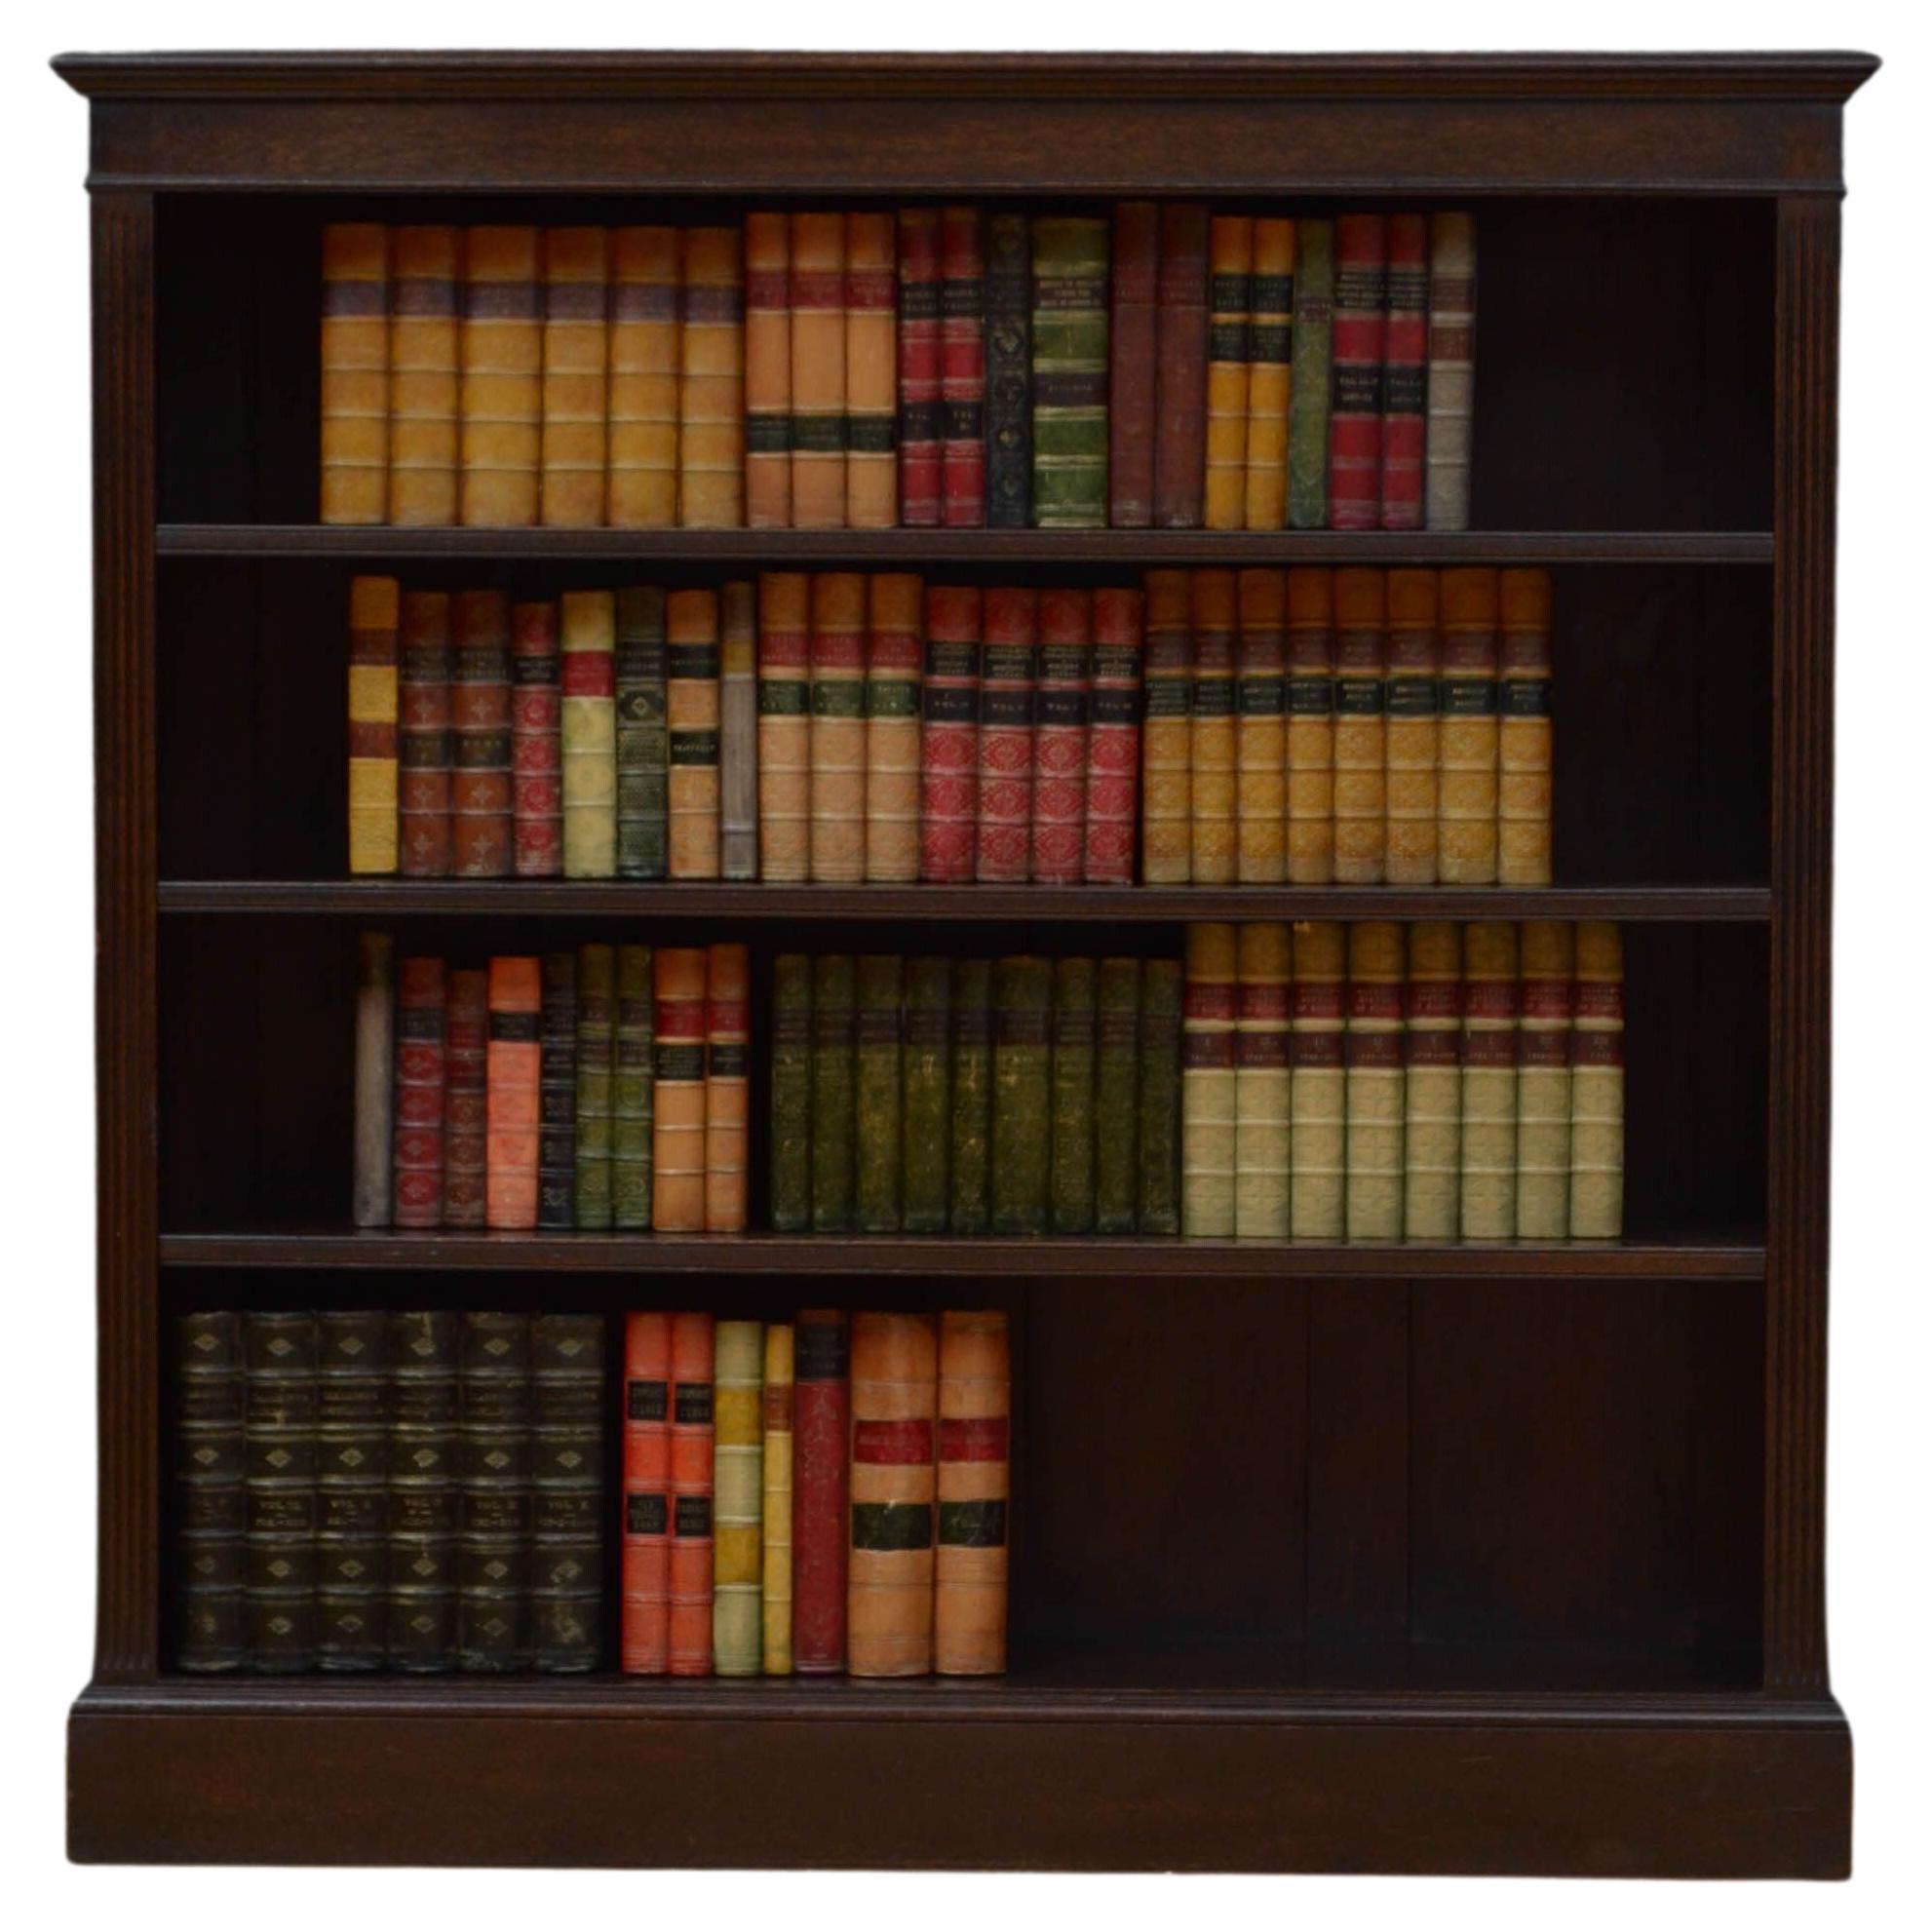 Offener Bücherregal aus massiver Eiche im viktorianischen Stil